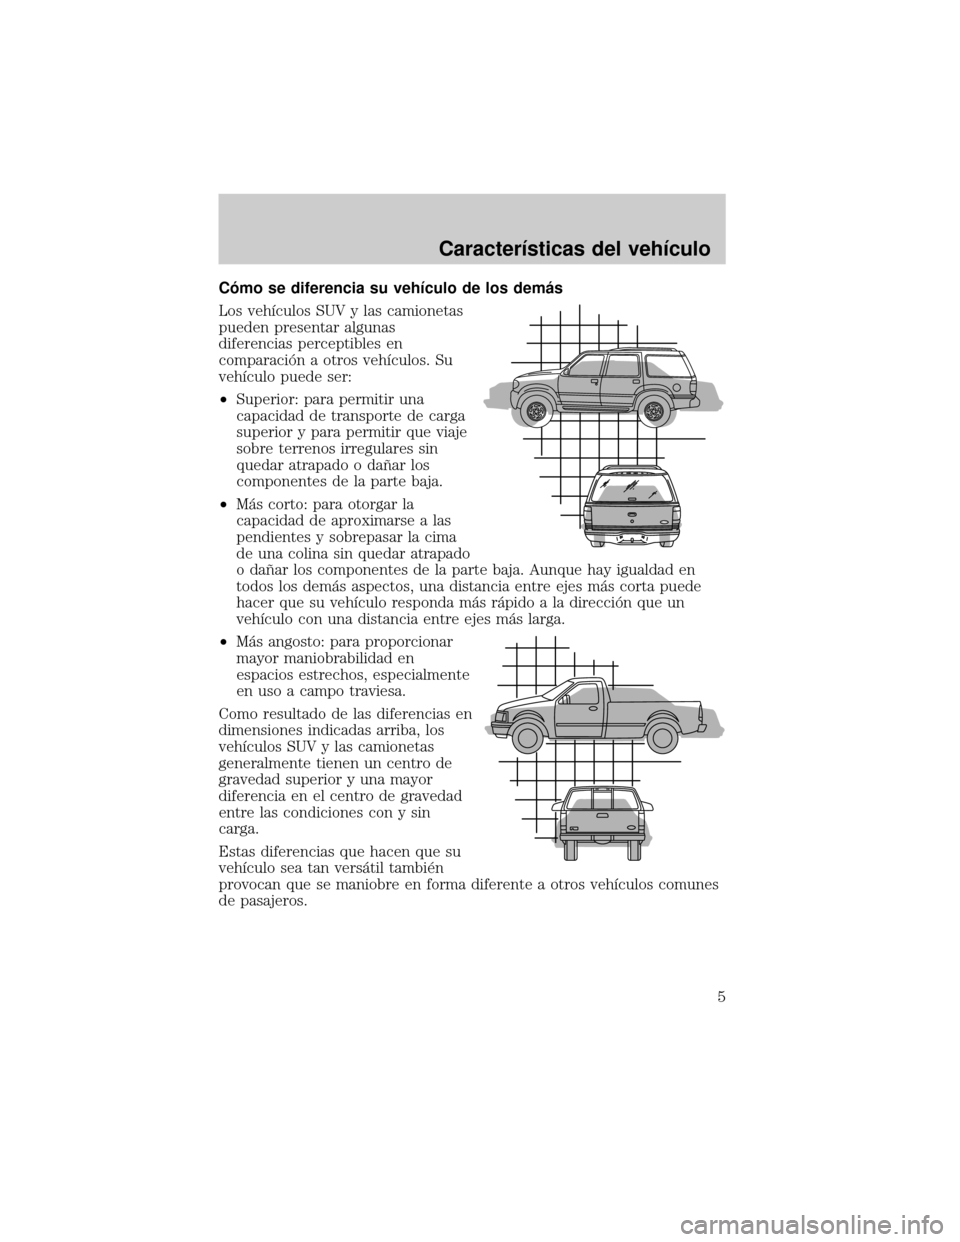 Mercury Mariner 2007  Manual de Usuario (in Spanish) Câmo se diferencia su vehÛculo de los demµs
Los vehÛculos SUV y las camionetas
pueden presentar algunas
diferencias perceptibles en
comparaciân a otros vehÛculos. Su
vehÛculo puede ser:
²Super